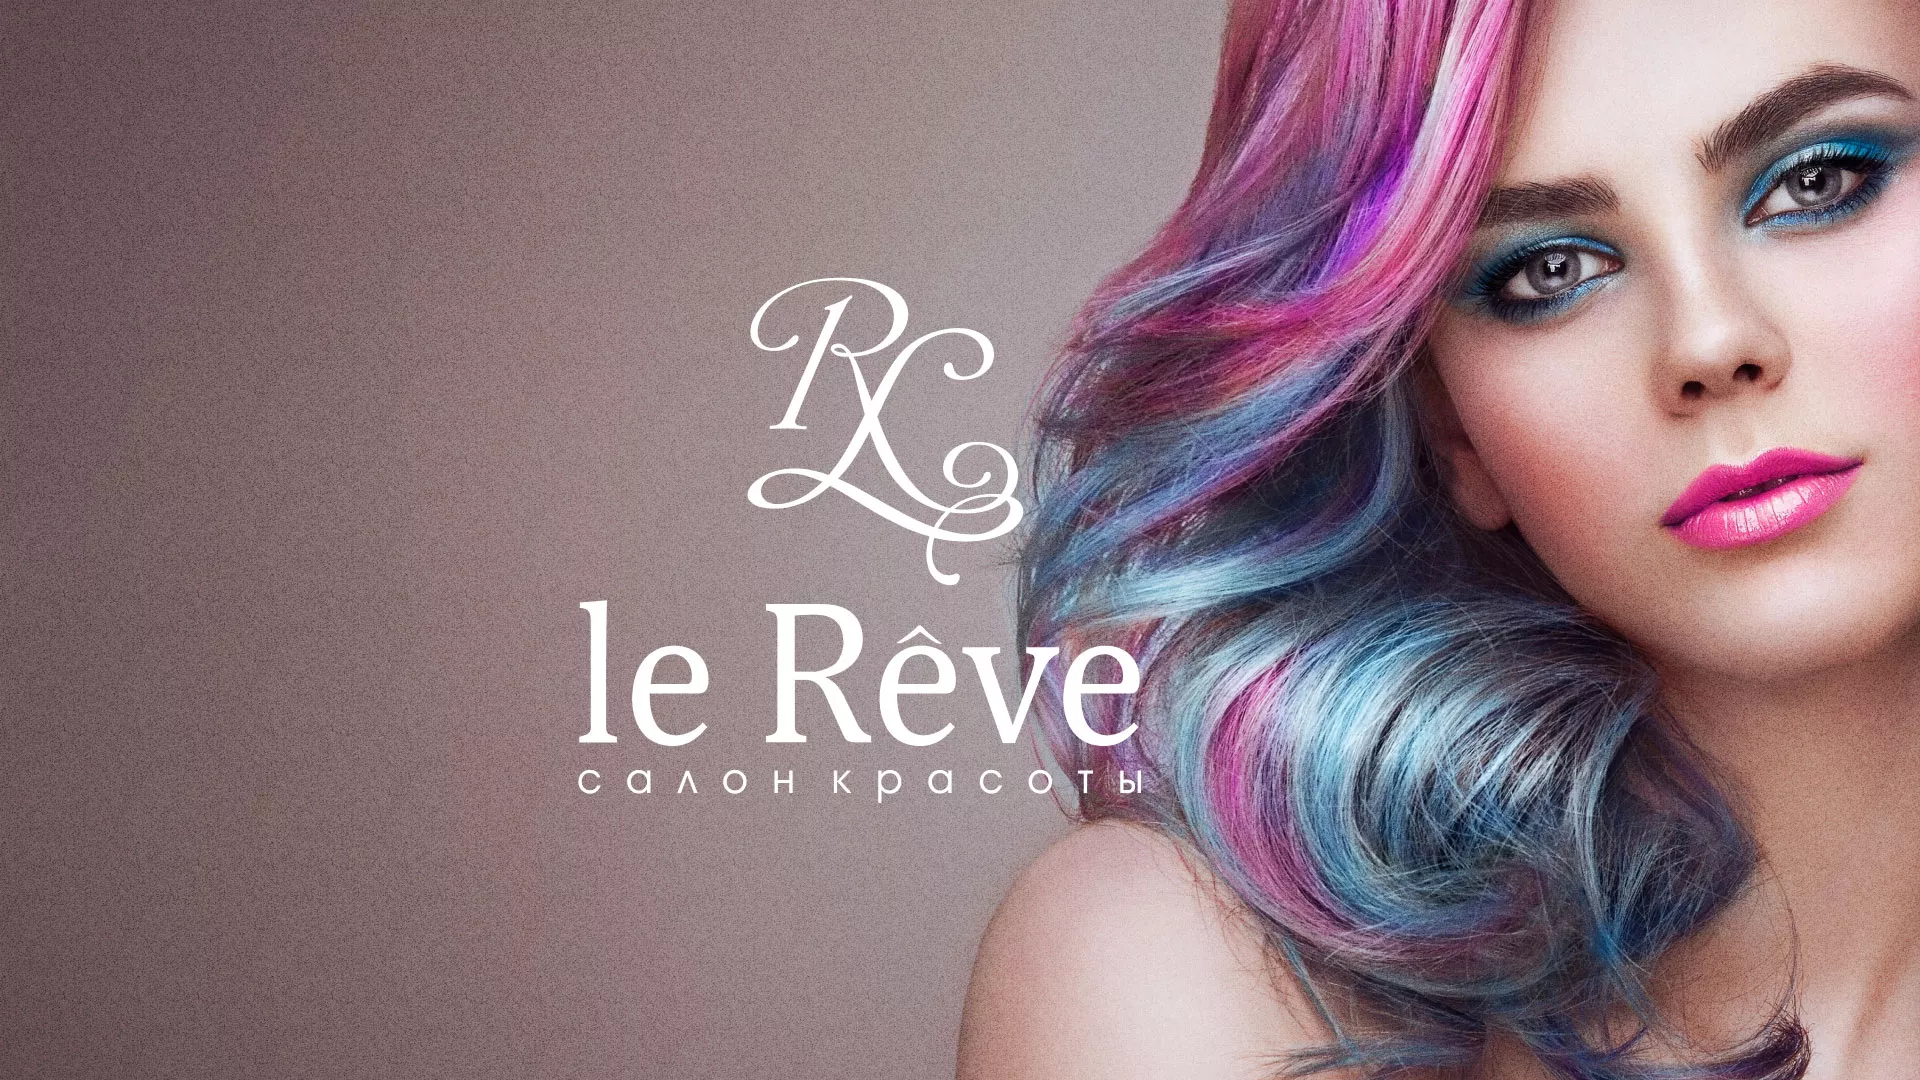 Создание сайта для салона красоты «Le Reve» в Судогде